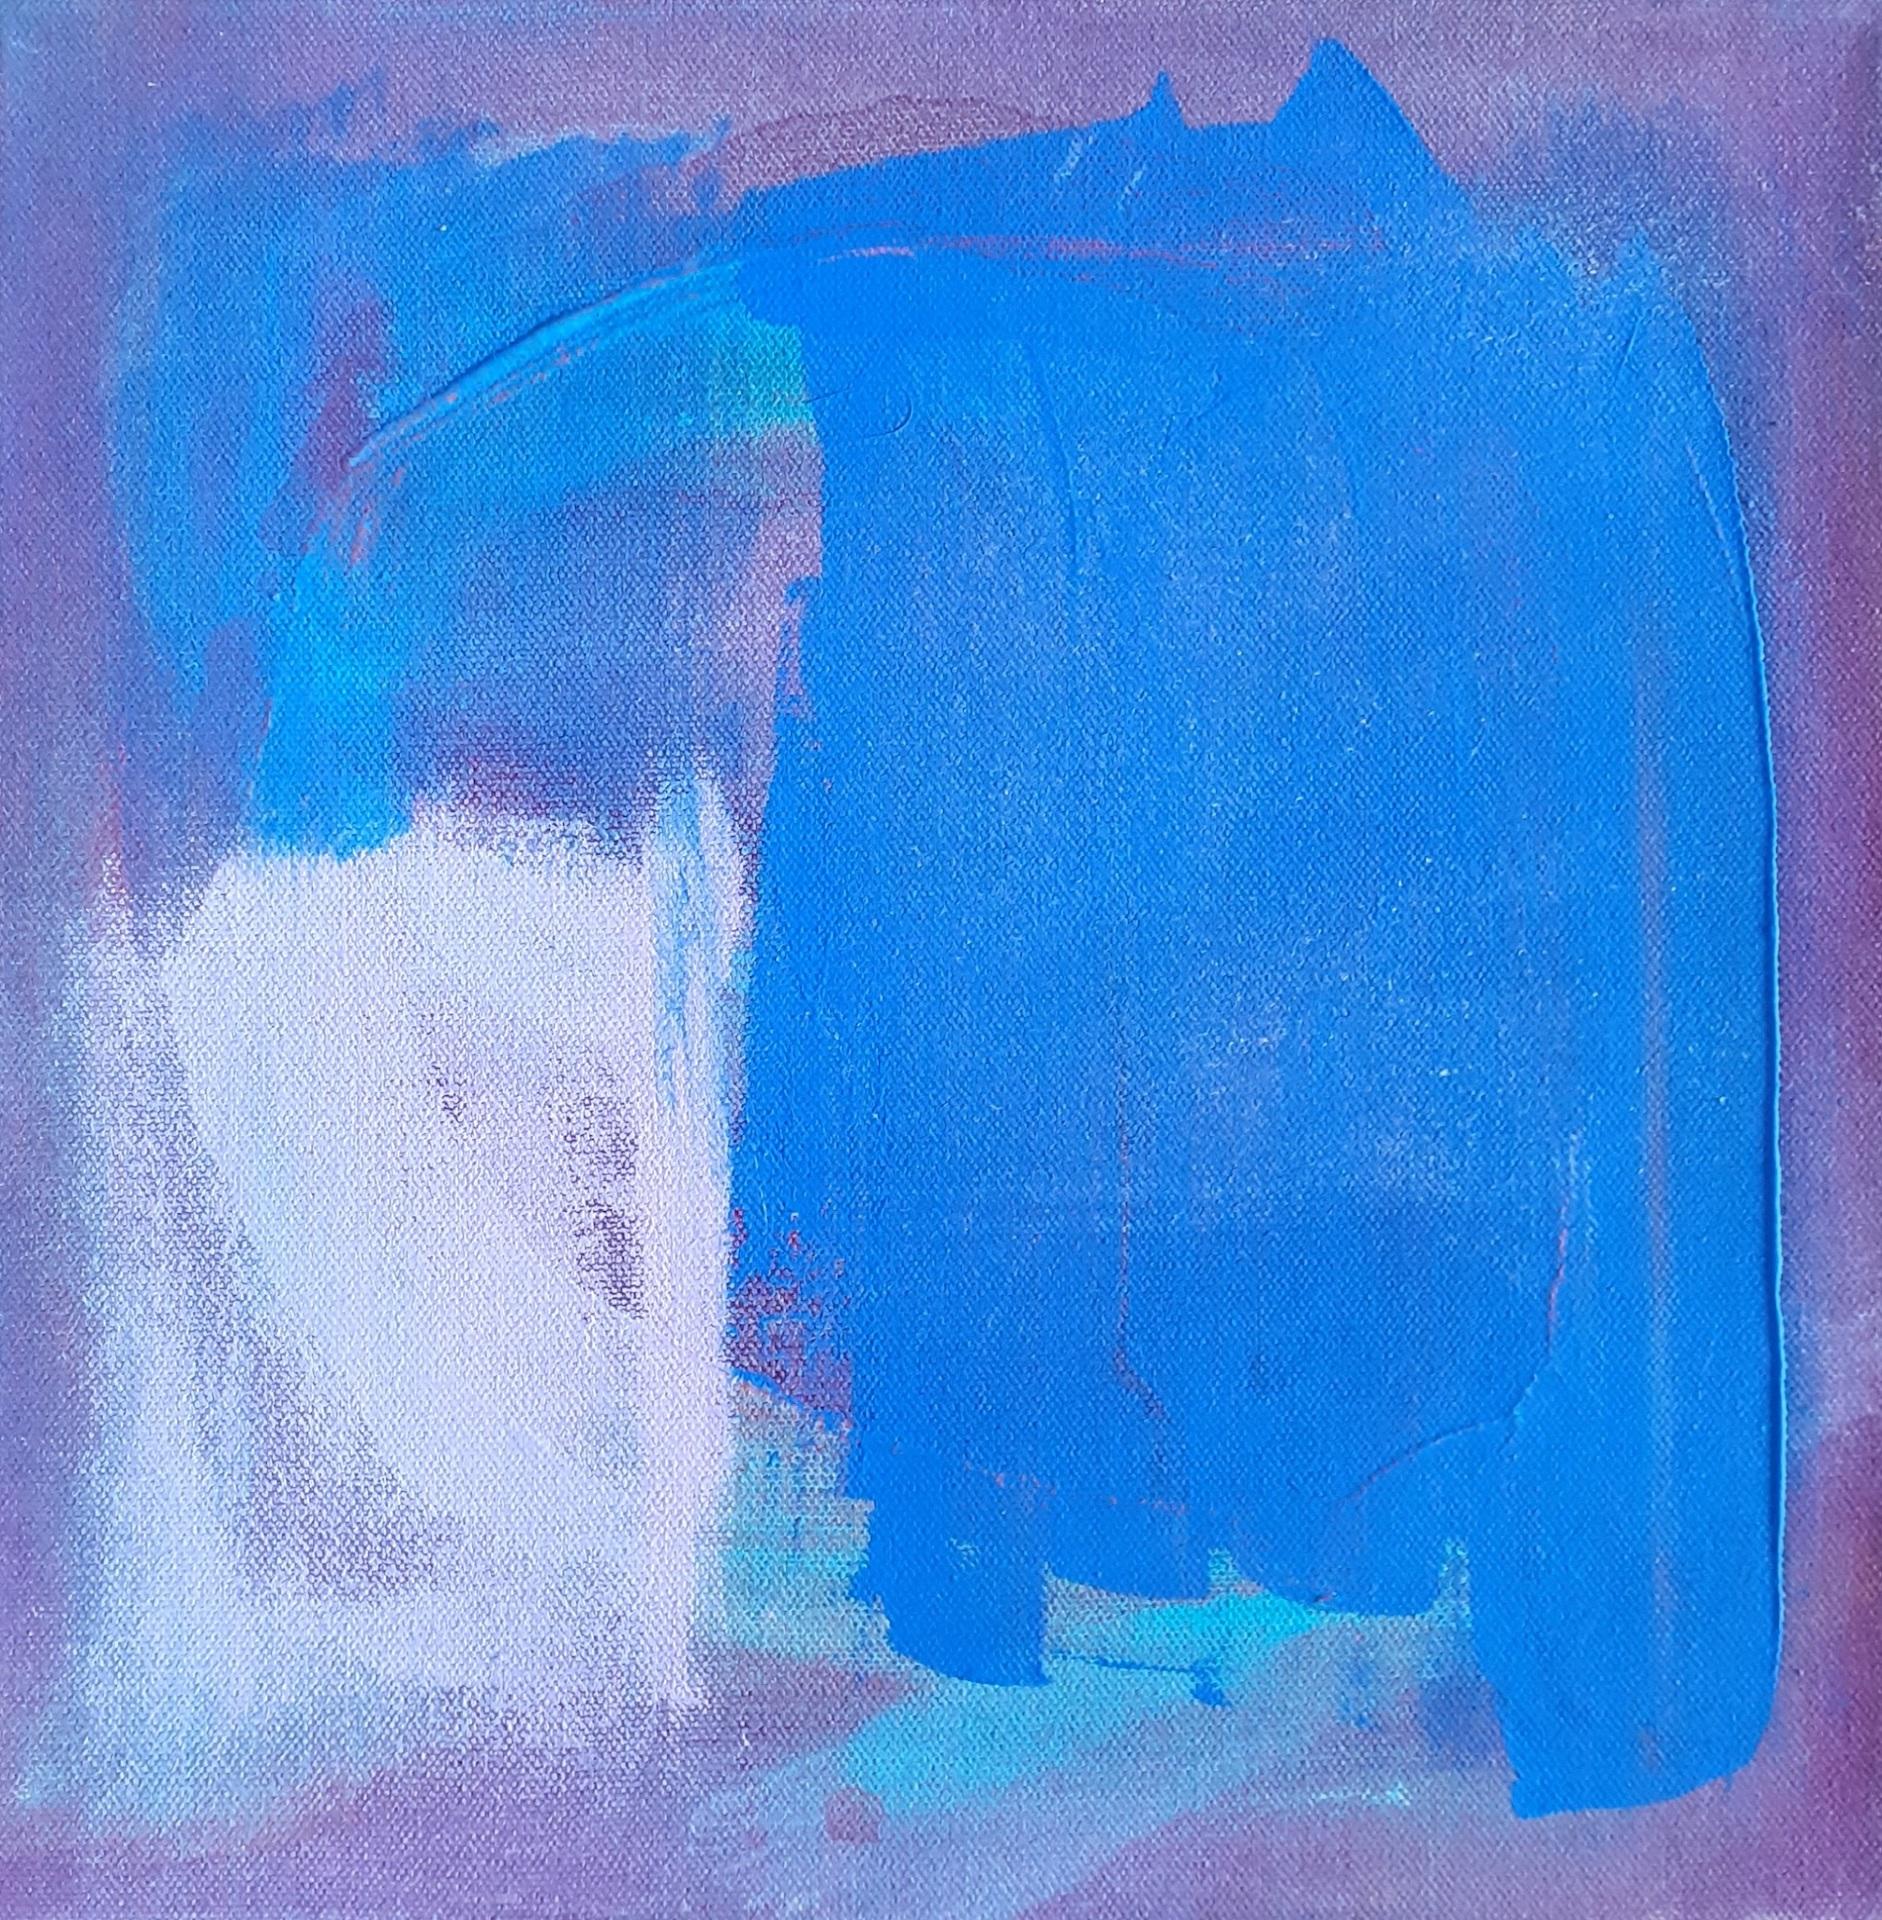 Julia Craig
Danse de la mer
Peinture abstraite originale
Acrylique sur toile
Taille : H 30cm x L 30cm
Vendu sans cadre
(Veuillez noter que les images in situ sont purement indicatives de l'aspect d'une pièce).

Julia est une artiste abstraite dont